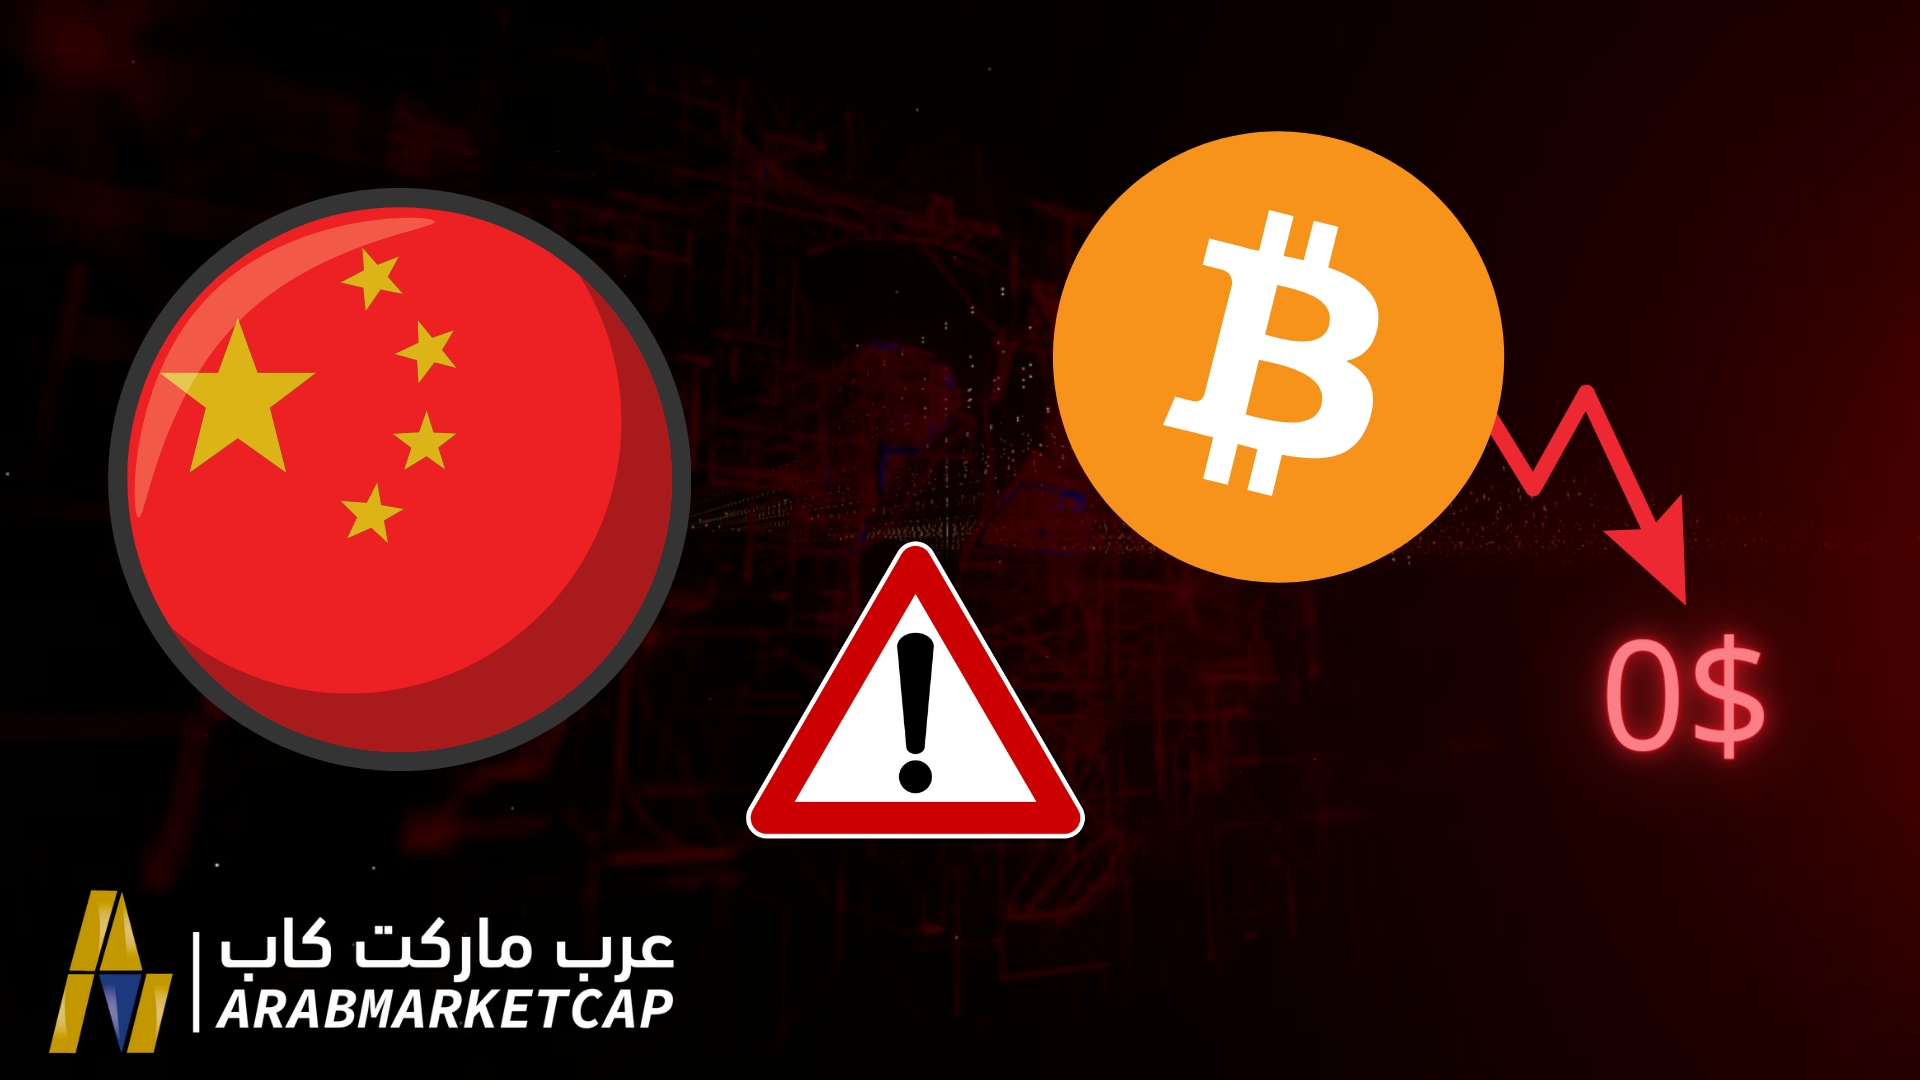 استغلت الحكومة الصينية الانكماش العنيف الذي يشهده سوق العملات الرقمية لتحذير مستثمري العملات الرقمية من أن البيتكوين قد يصل للصفر